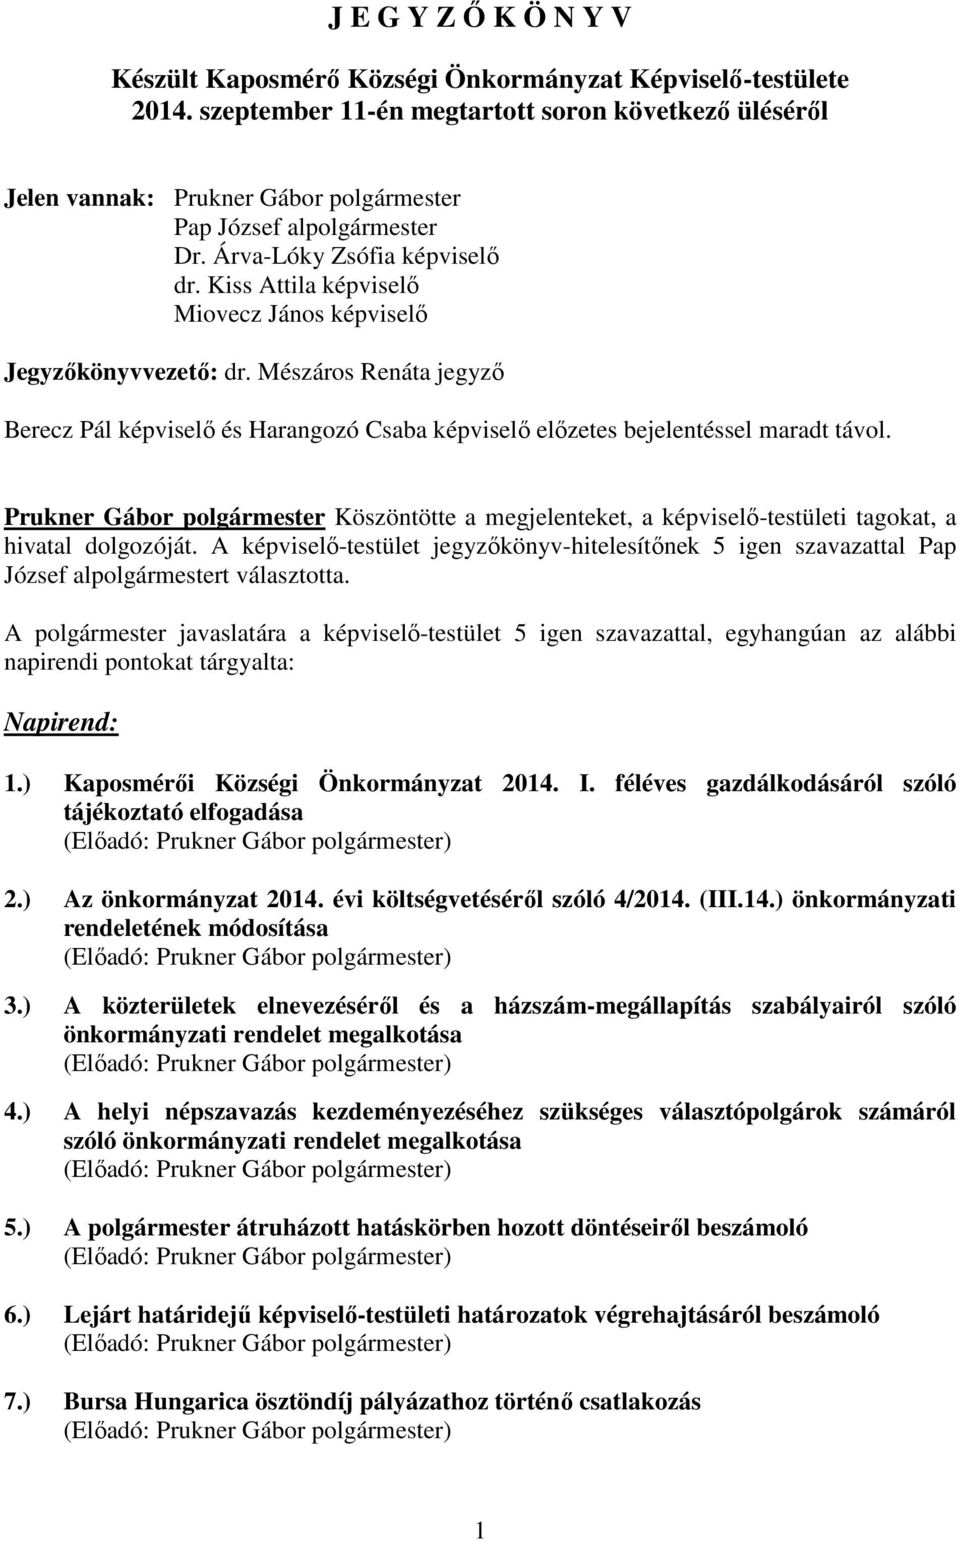 Mészáros Renáta jegyzı Berecz Pál képviselı és Harangozó Csaba képviselı elızetes bejelentéssel maradt távol. Köszöntötte a megjelenteket, a képviselı-testületi tagokat, a hivatal dolgozóját.